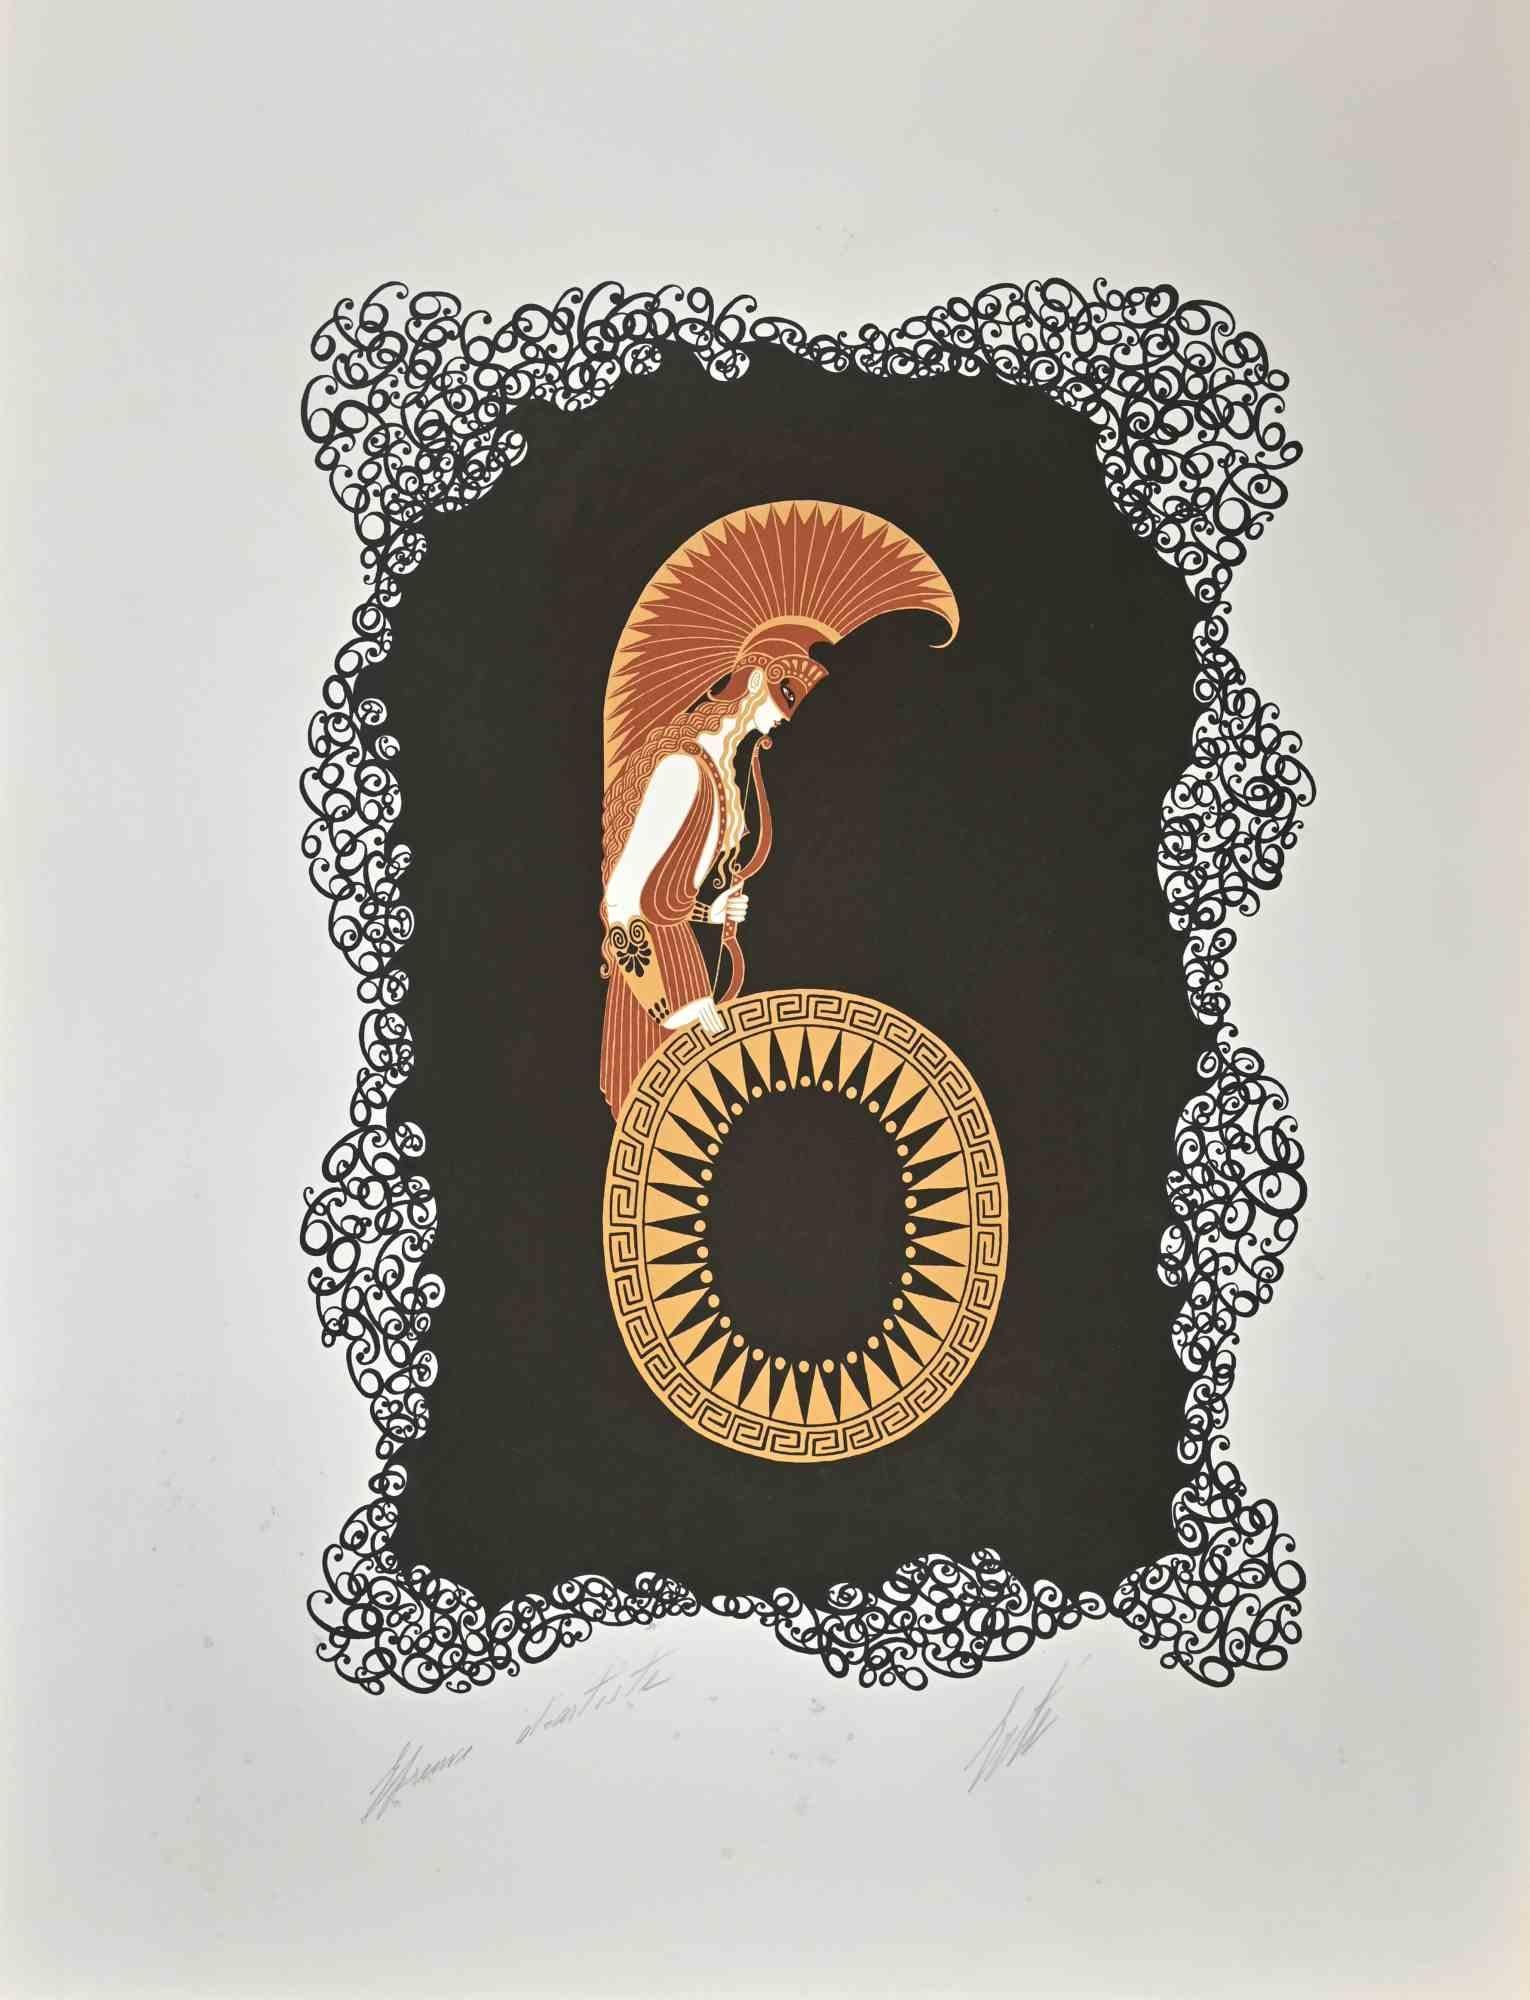 Le 6 est une œuvre d'art contemporain réalisée en 1968 par Erté (Romain de Tirtoff).

Lithographie en couleurs mélangées sur papier.

L'œuvre d'art est tirée de la série "Les Chiffres".

Signé à la main dans la marge inférieure.

Preuve